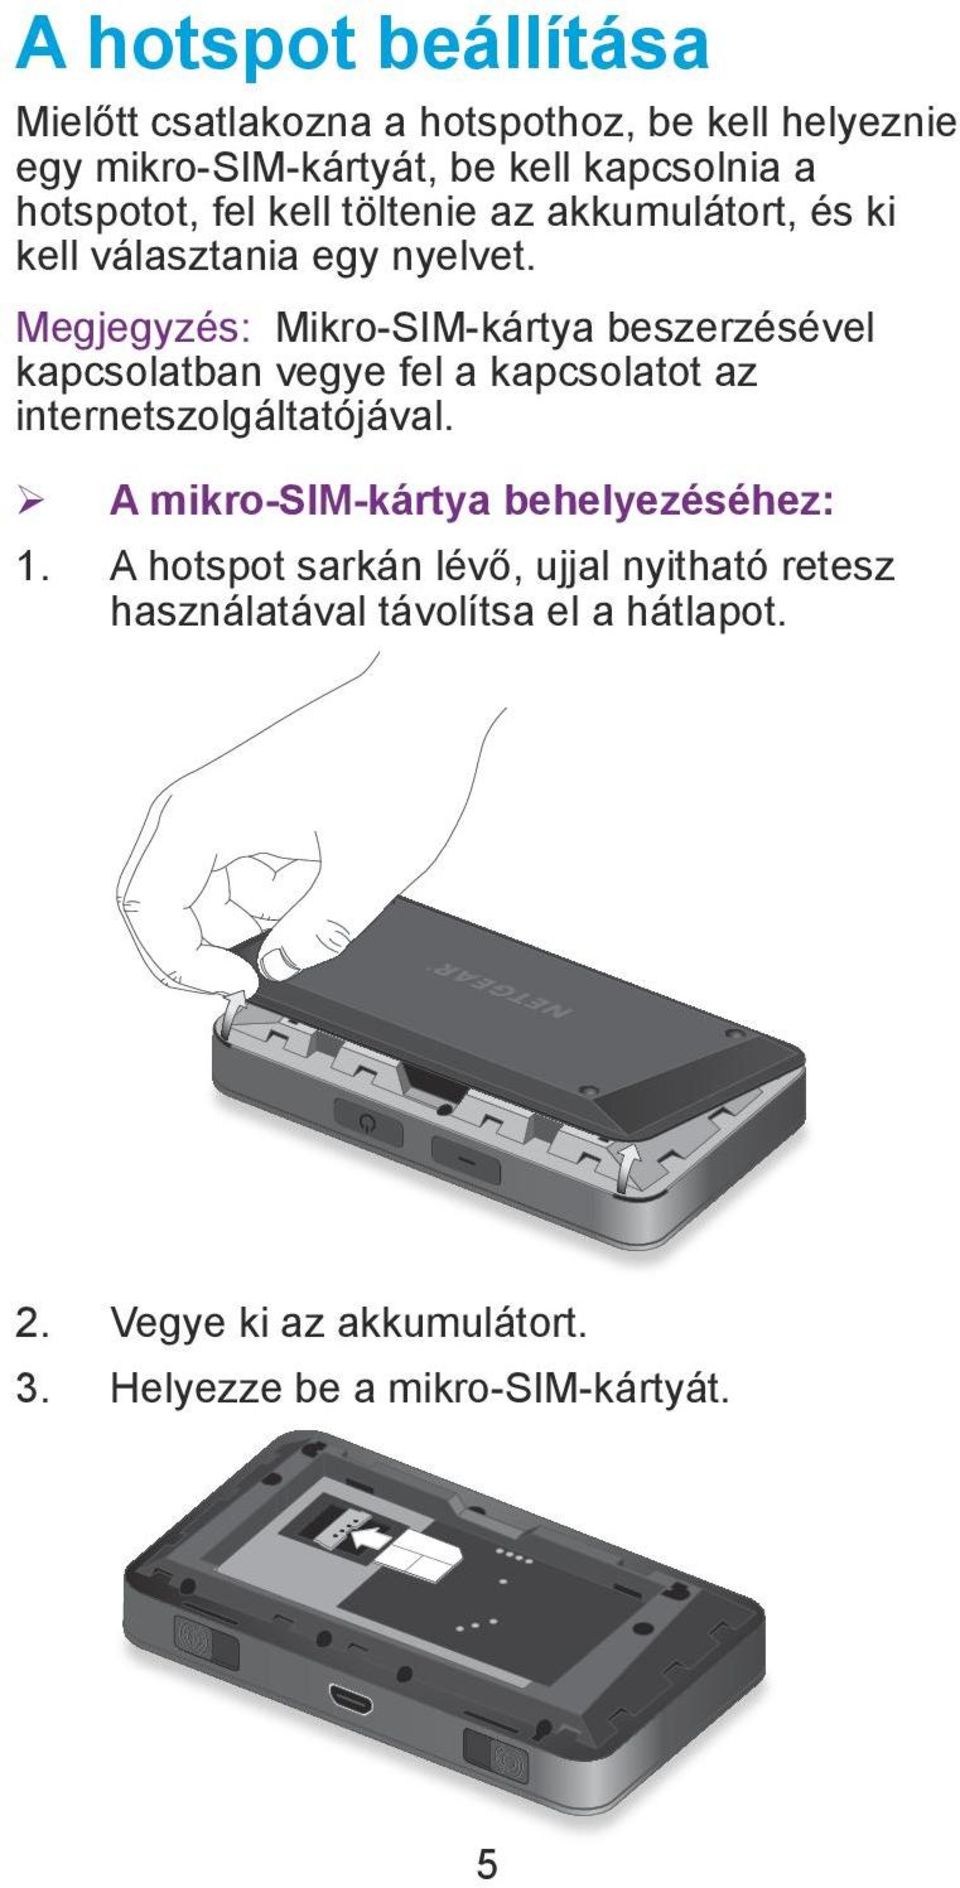 Megjegyzés: Mikro-SIM-kártya beszerzésével kapcsolatban vegye fel a kapcsolatot az internetszolgáltatójával.